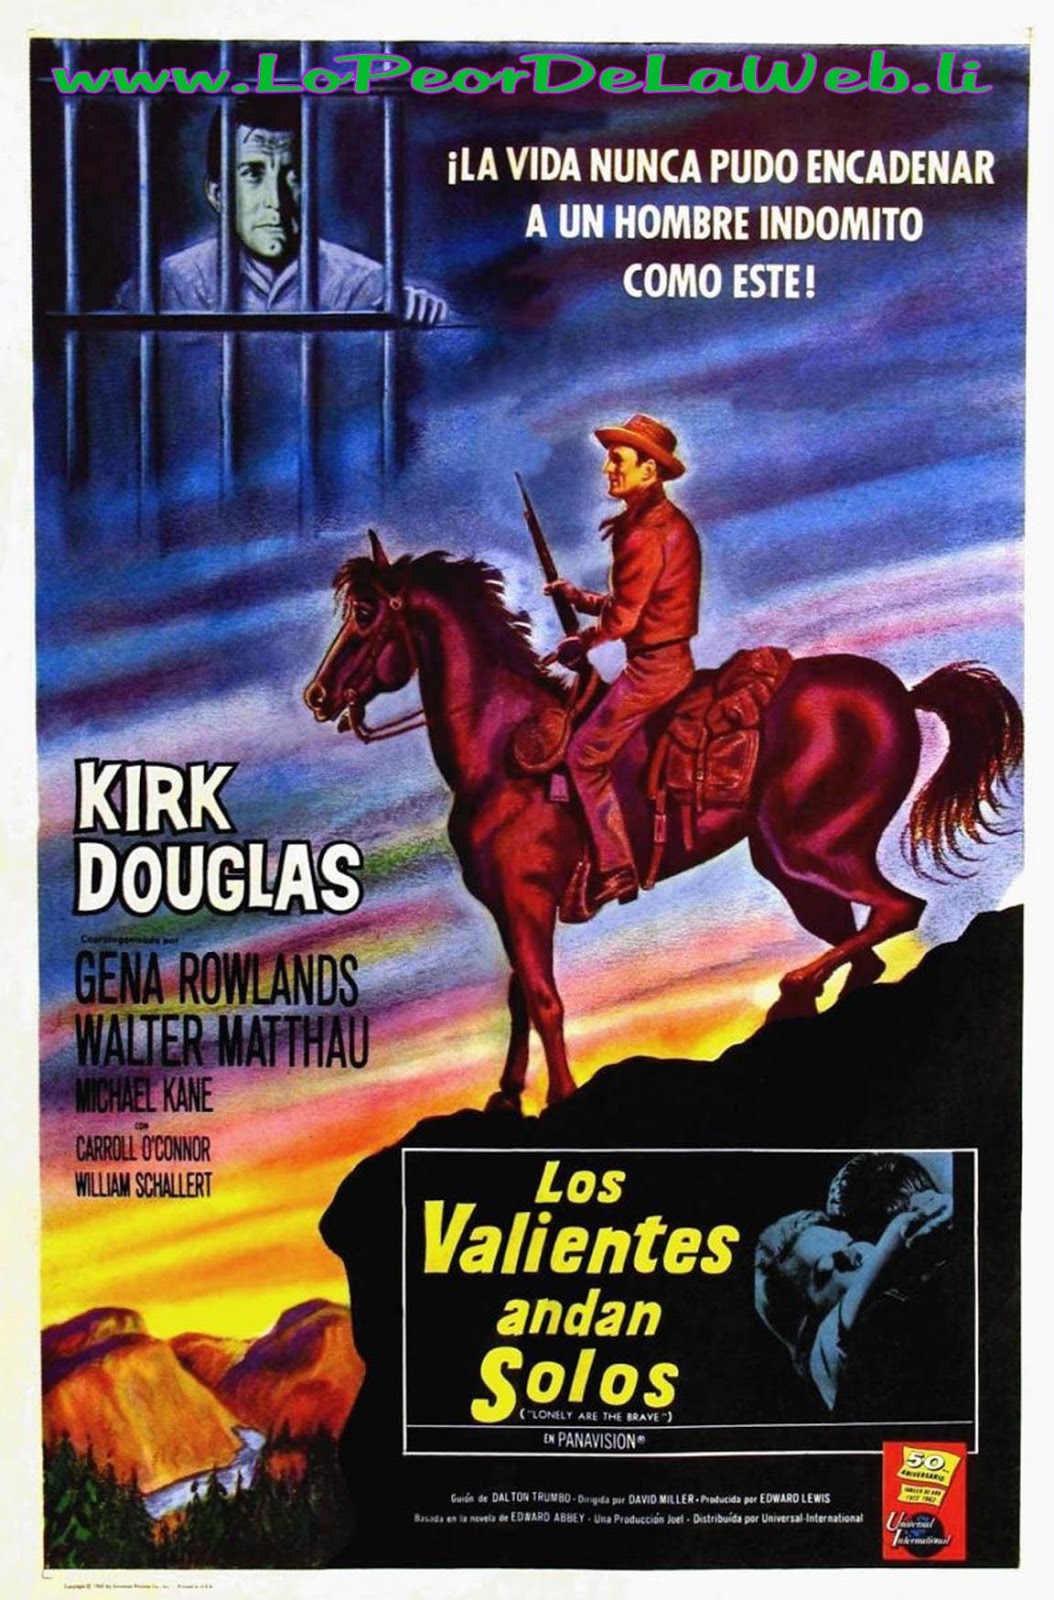 Los Valientes Andan Solos (Western / 1962 / Kirk Douglas)